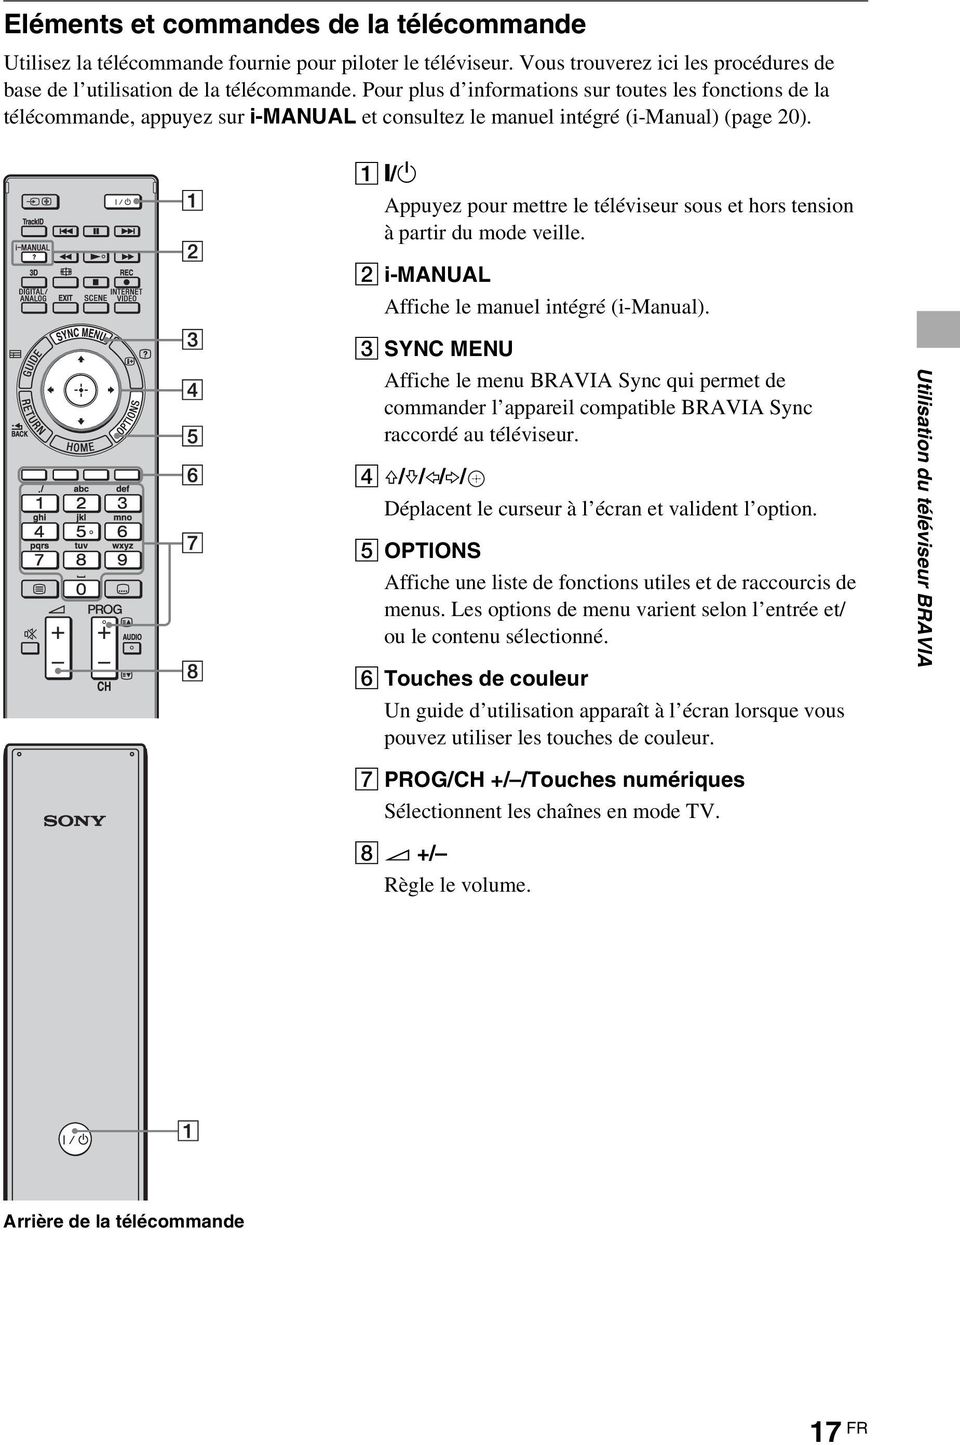 1:/1 Appuyez pour mettre le téléviseur sous et hors tension à partir du mode veille. 2 i-manual Affiche le manuel intégré (i-manual).